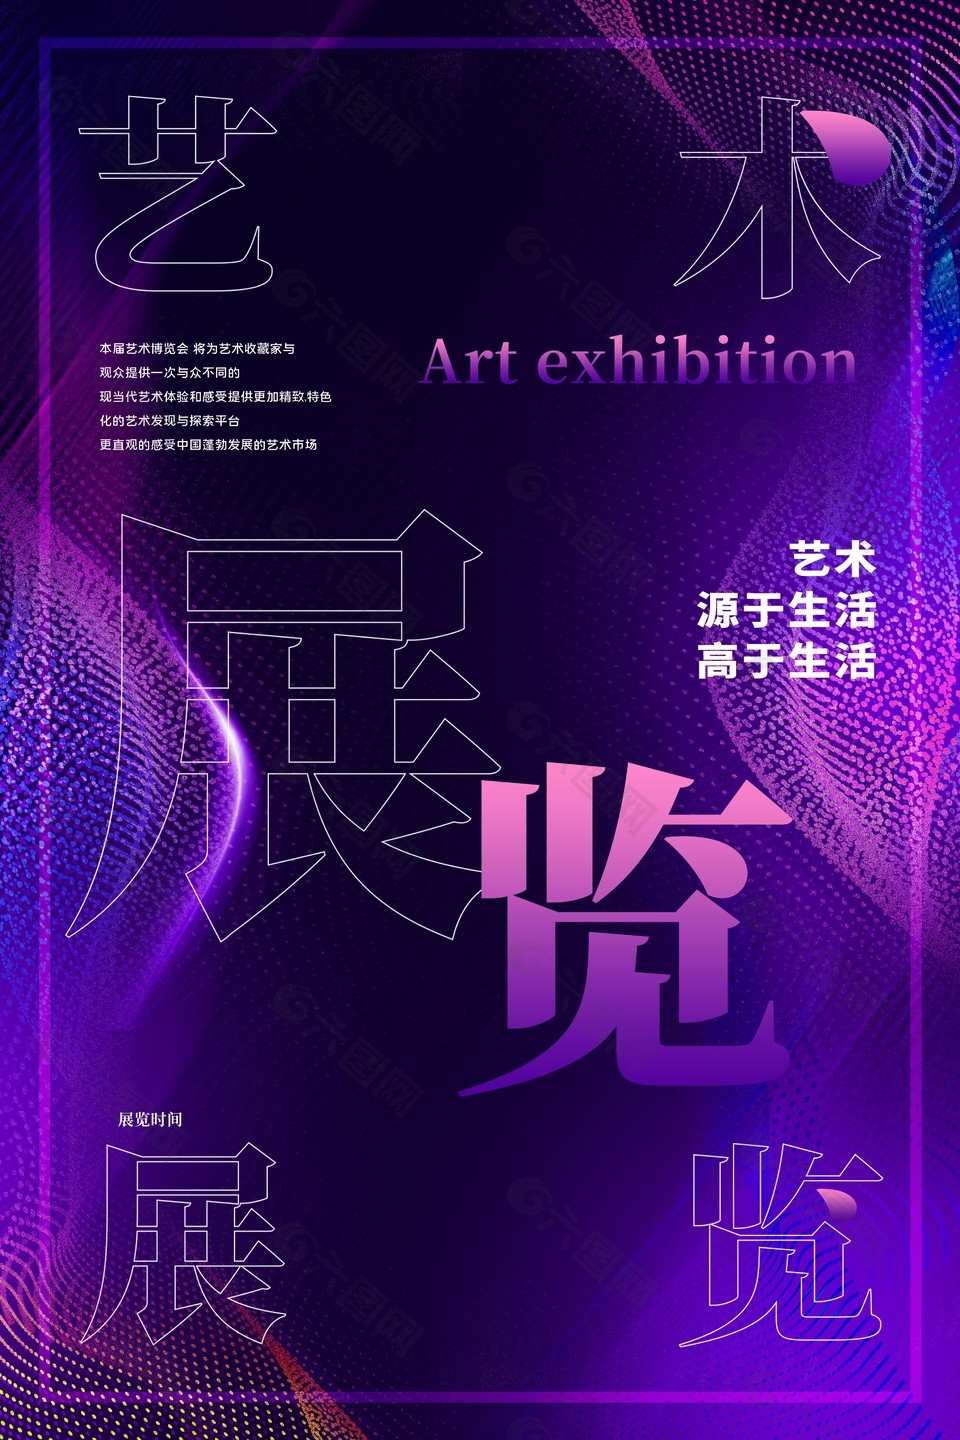 紫色炫彩艺术展览手机海报素材下载